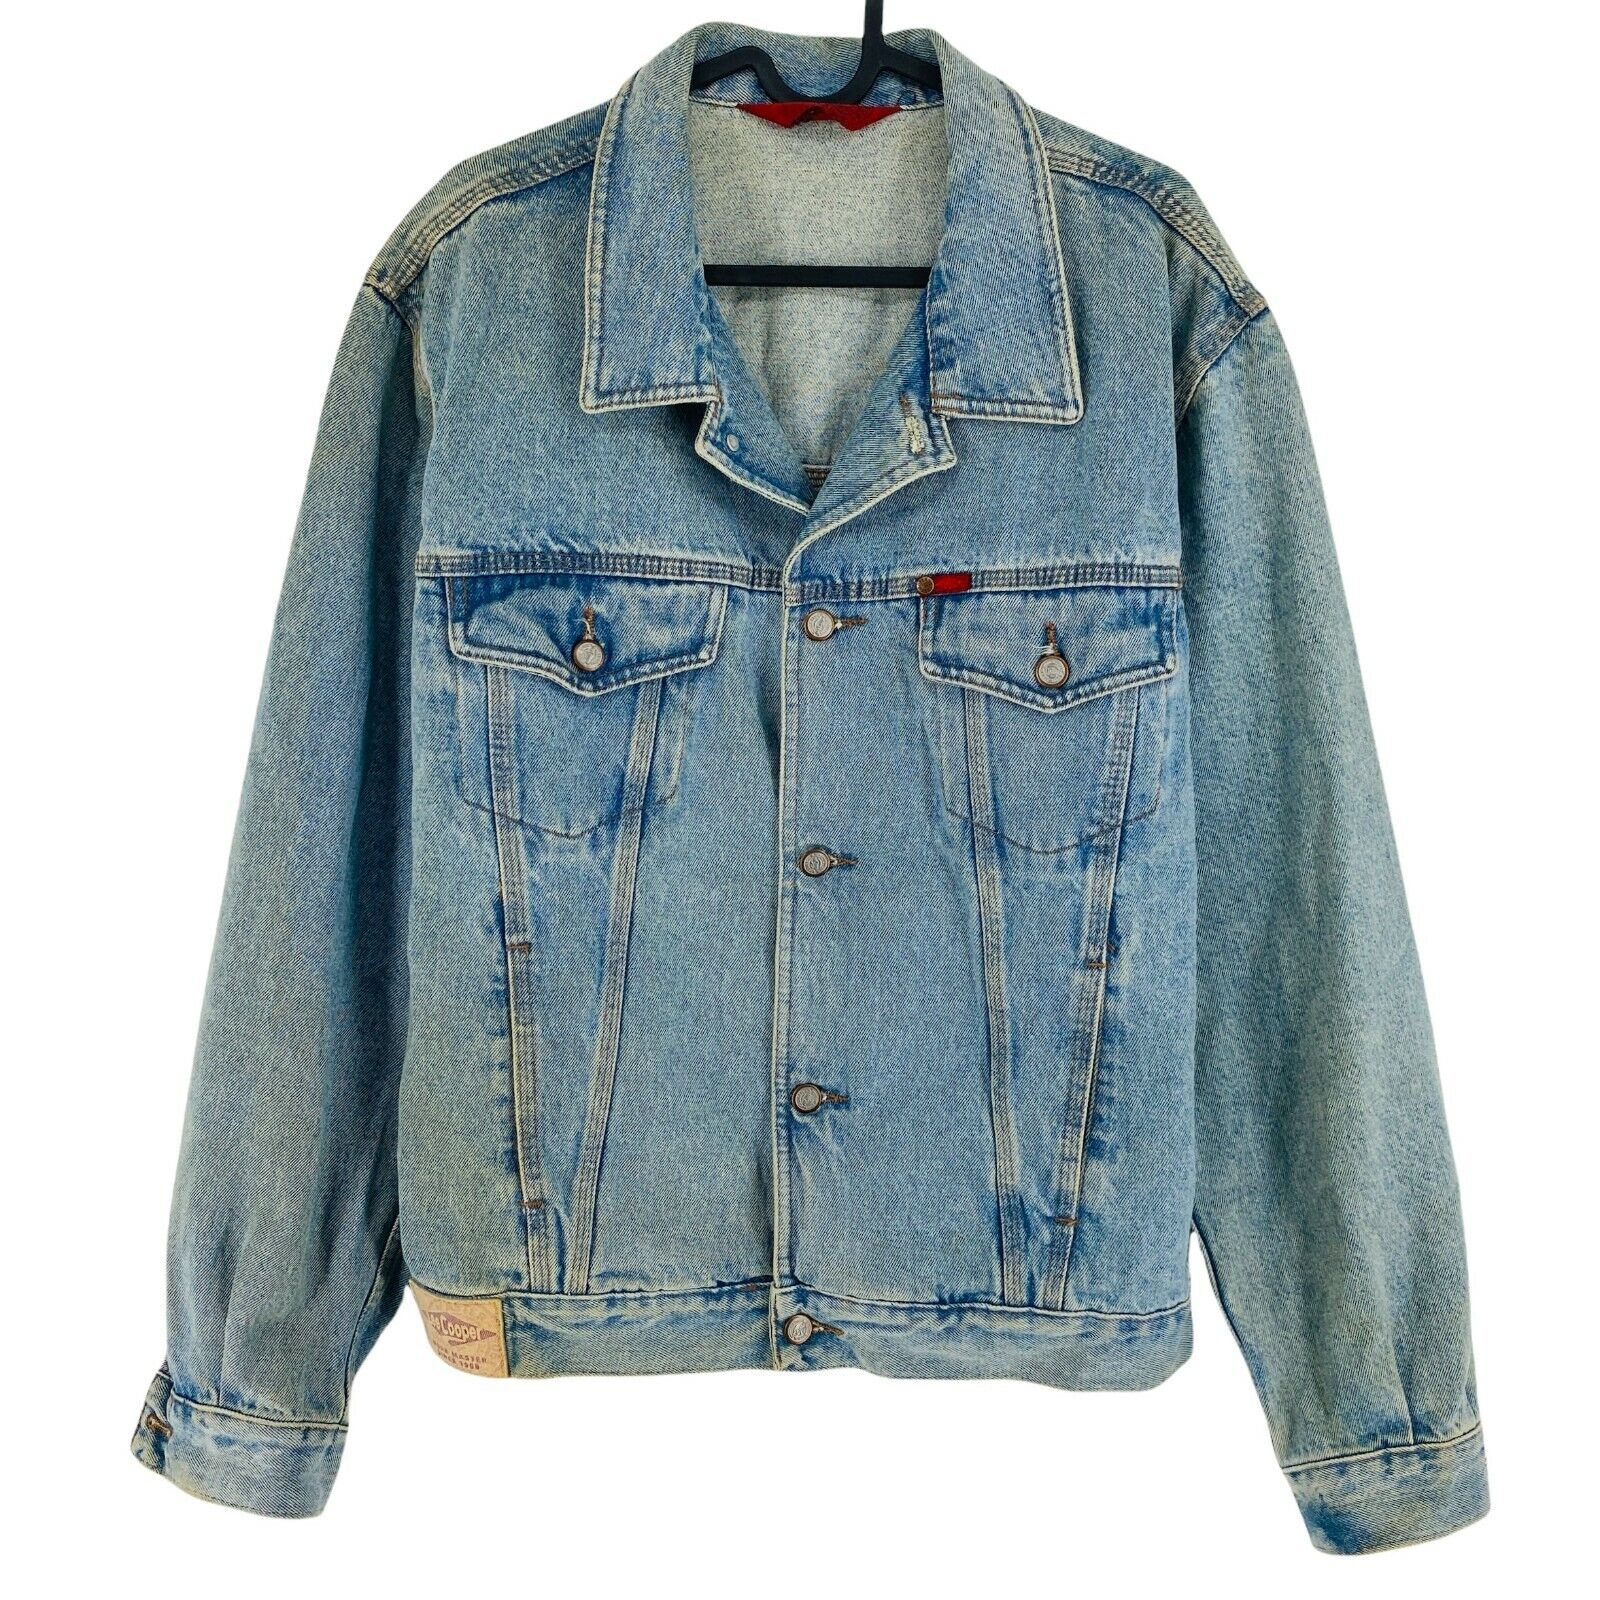 LEE COOPER Blue Vintage Retro Denim Jeans Jacket Size S | eBay